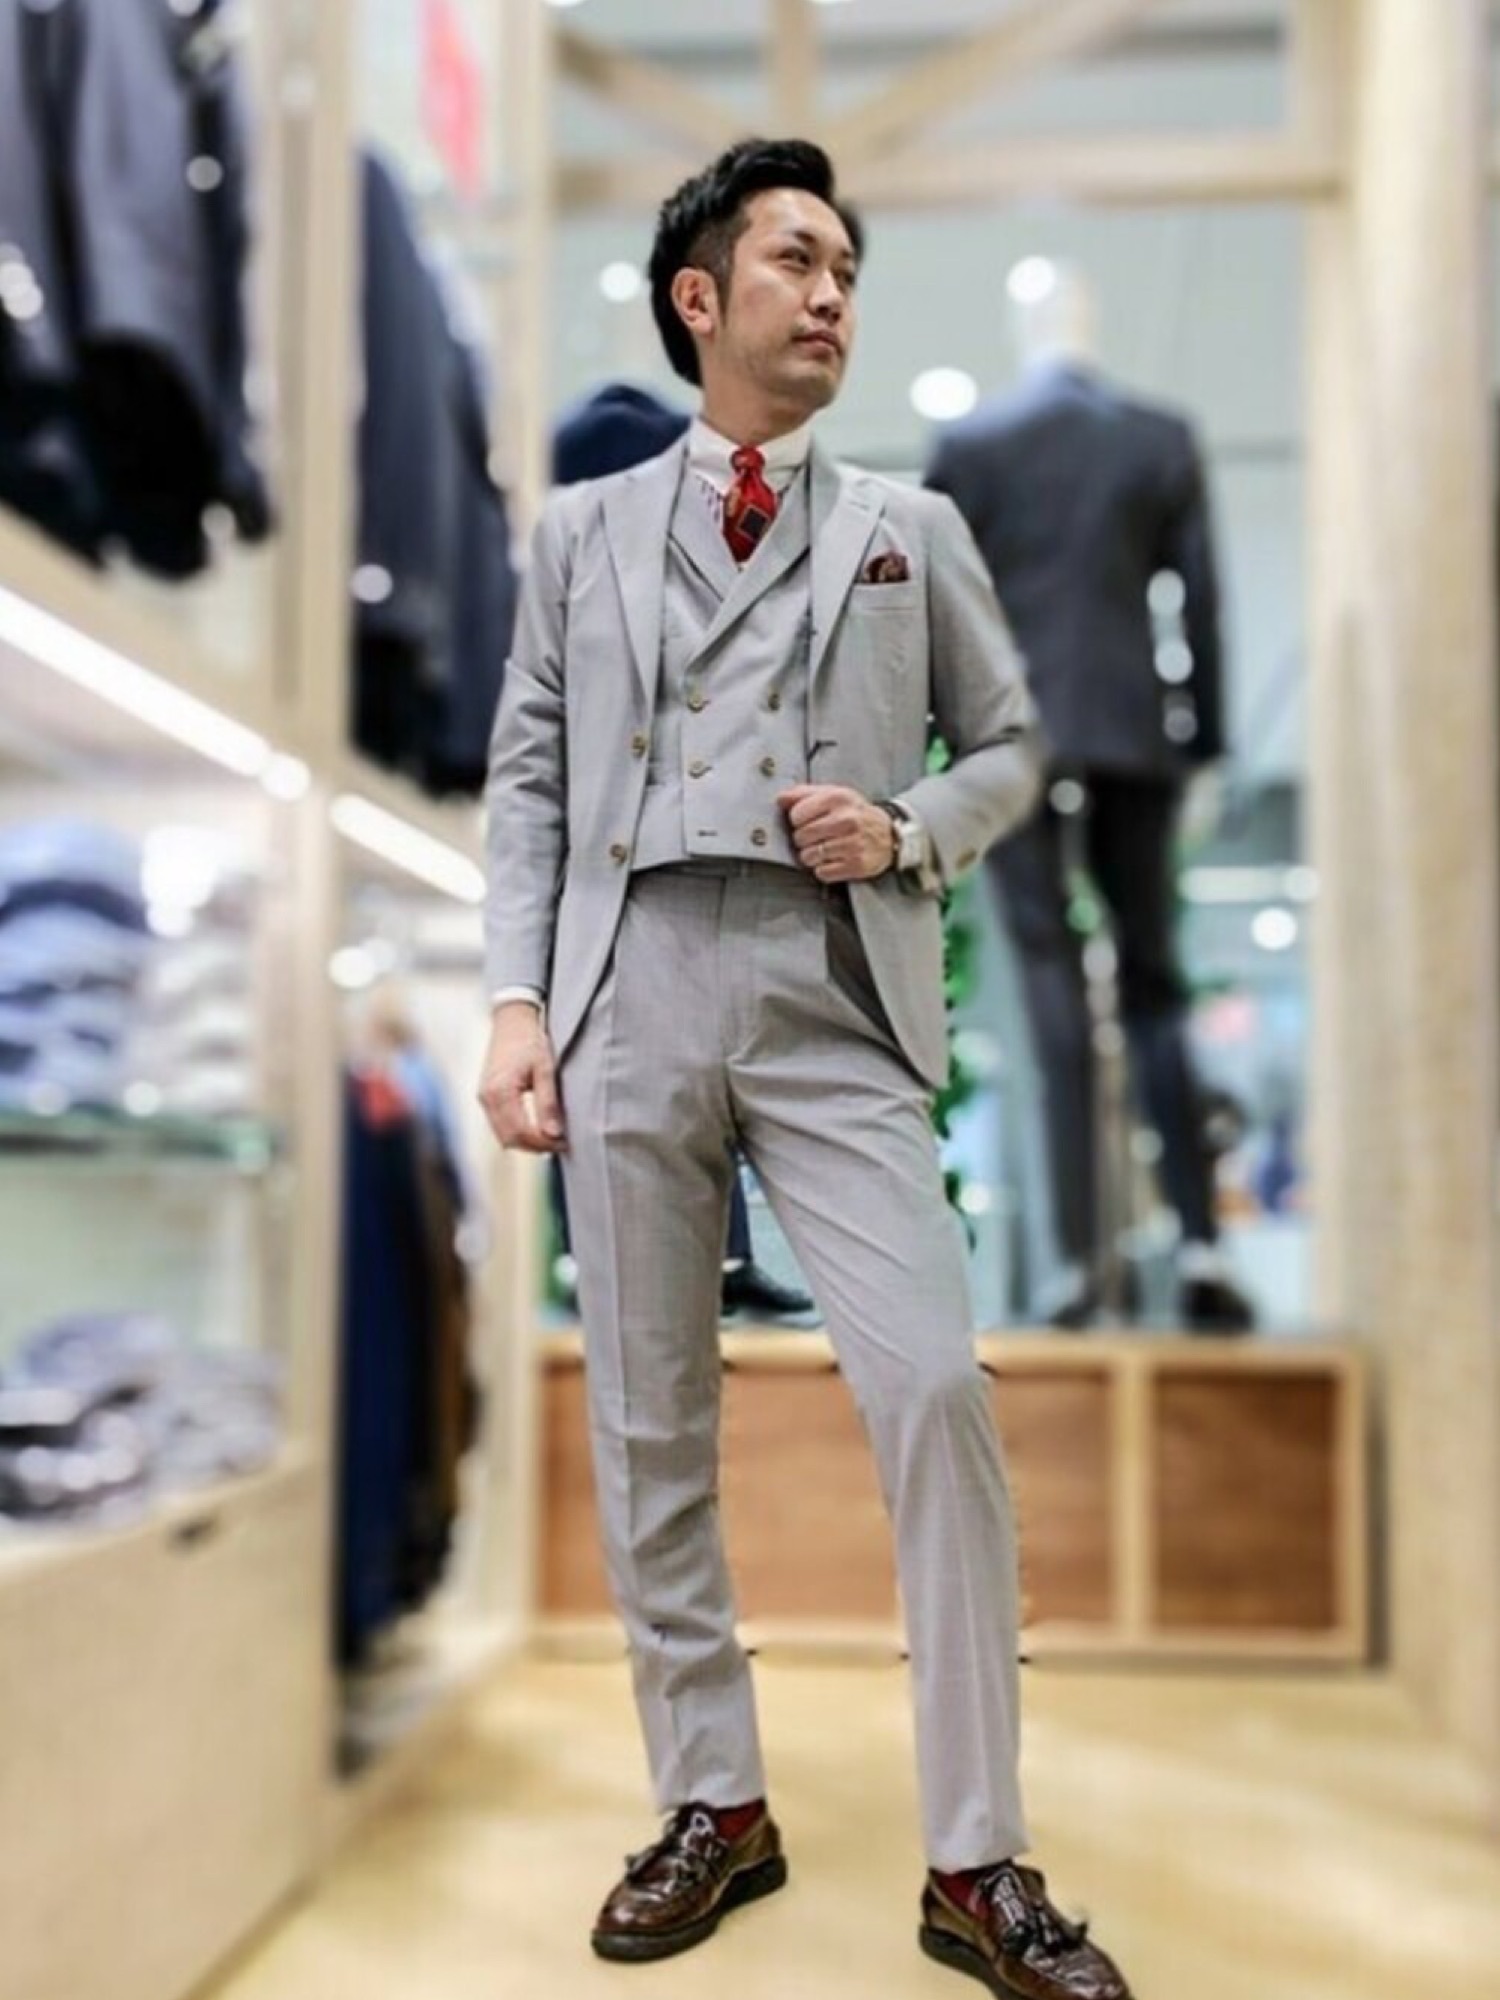 ビジネス用コート Lサイズ Perfect Suit FActory - アウター